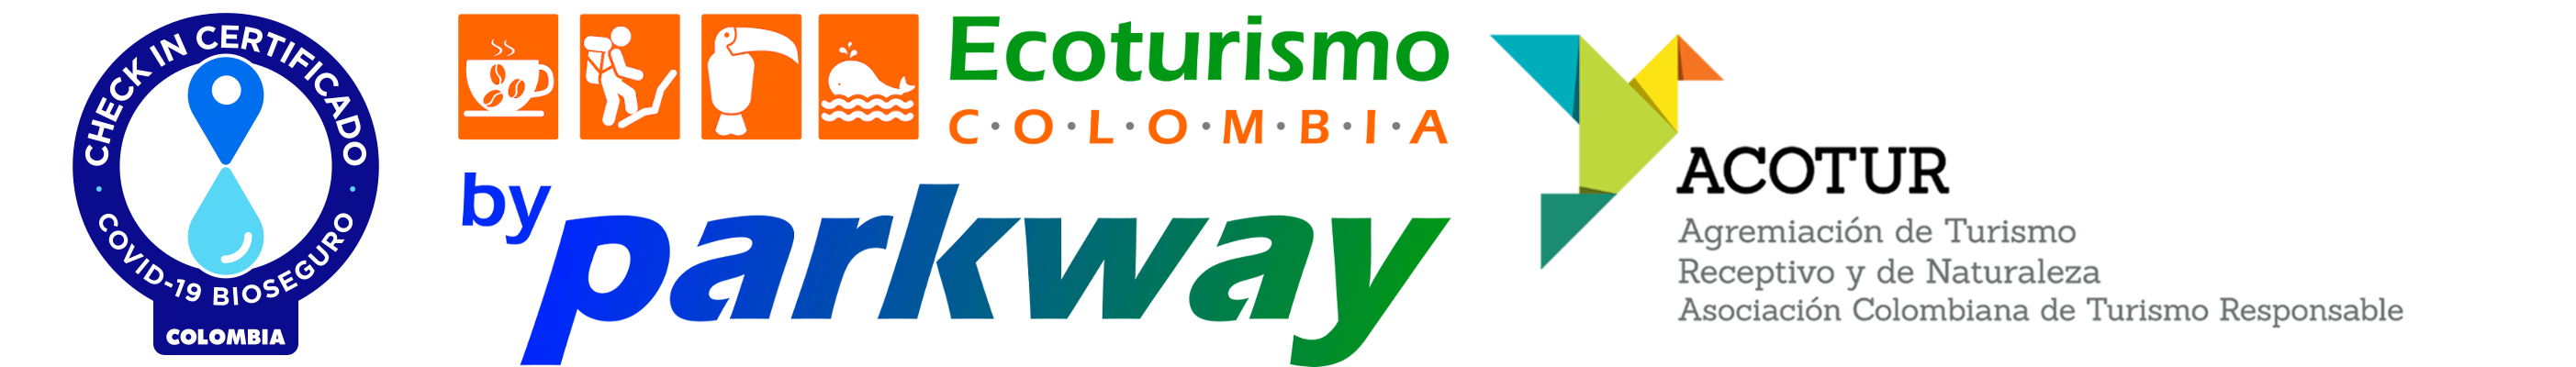 Ecoturismo Colombia – Organización Parkway